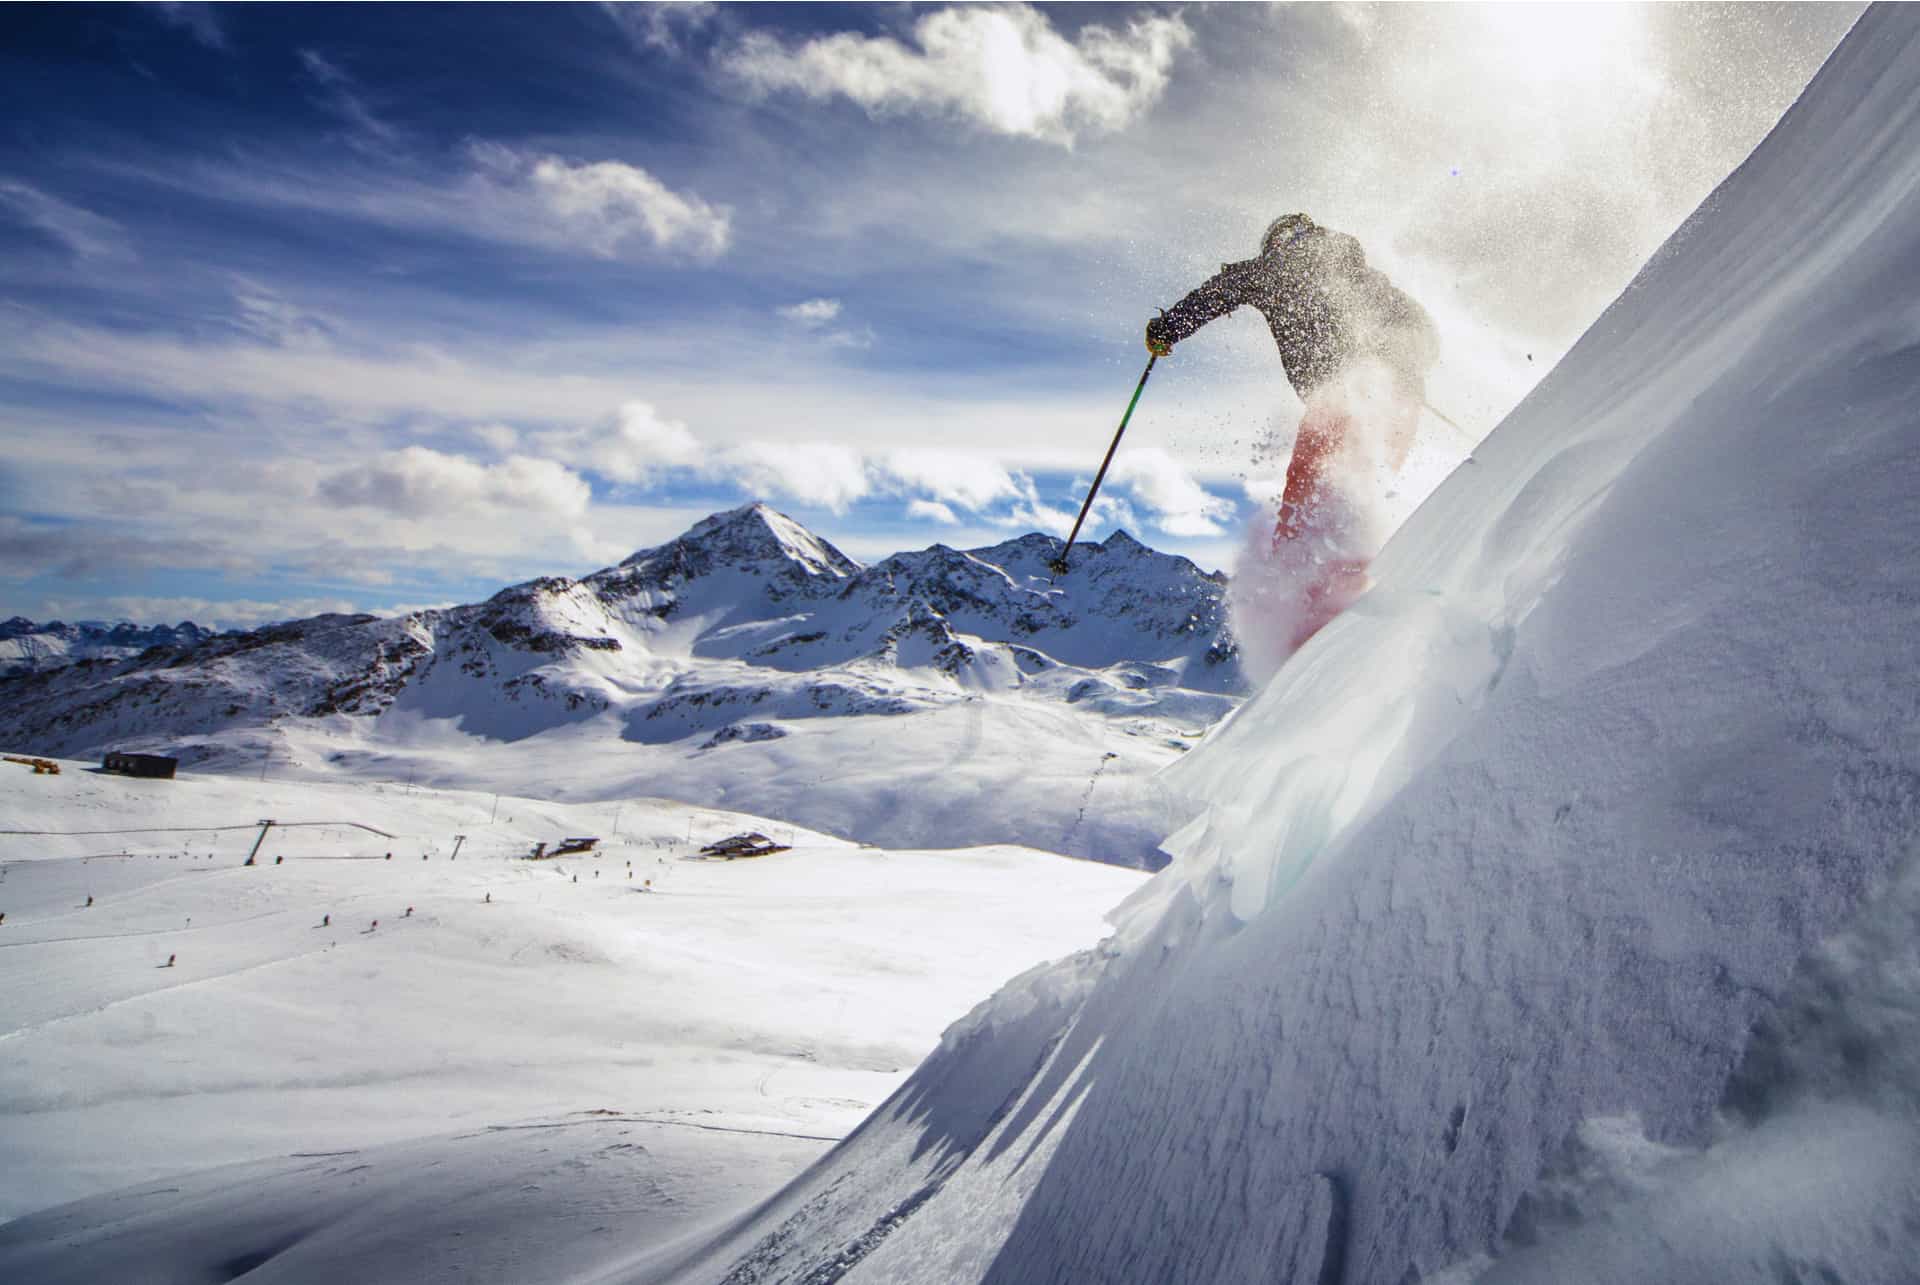 Vacances à la montagne : Comment préparer sa voiture pour partir au ski